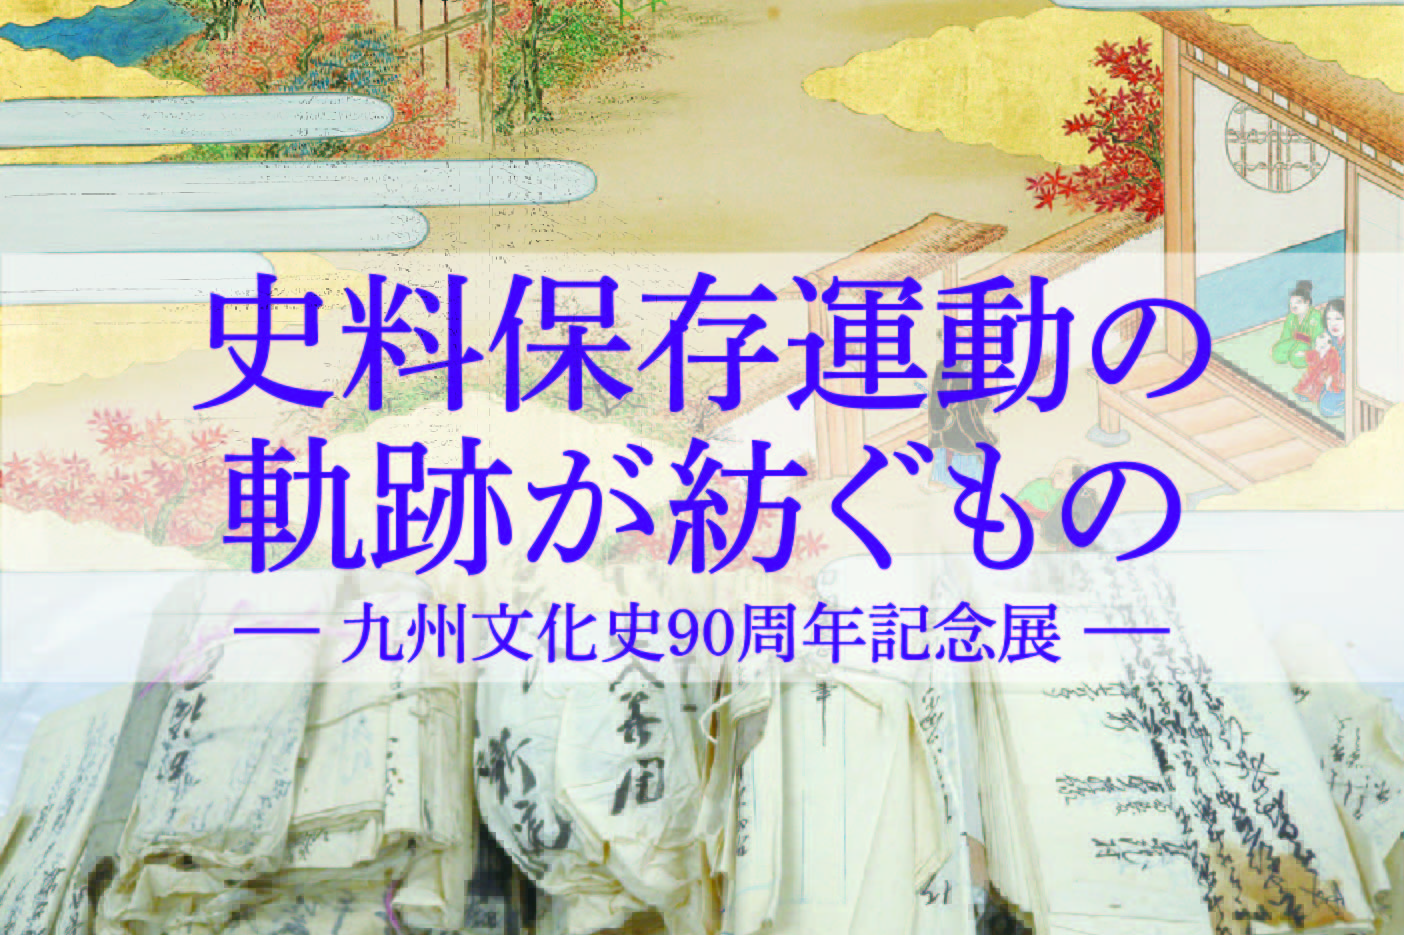 史料保存運動の軌跡が紡ぐもの ― 九州文化史90周年記念展 ―